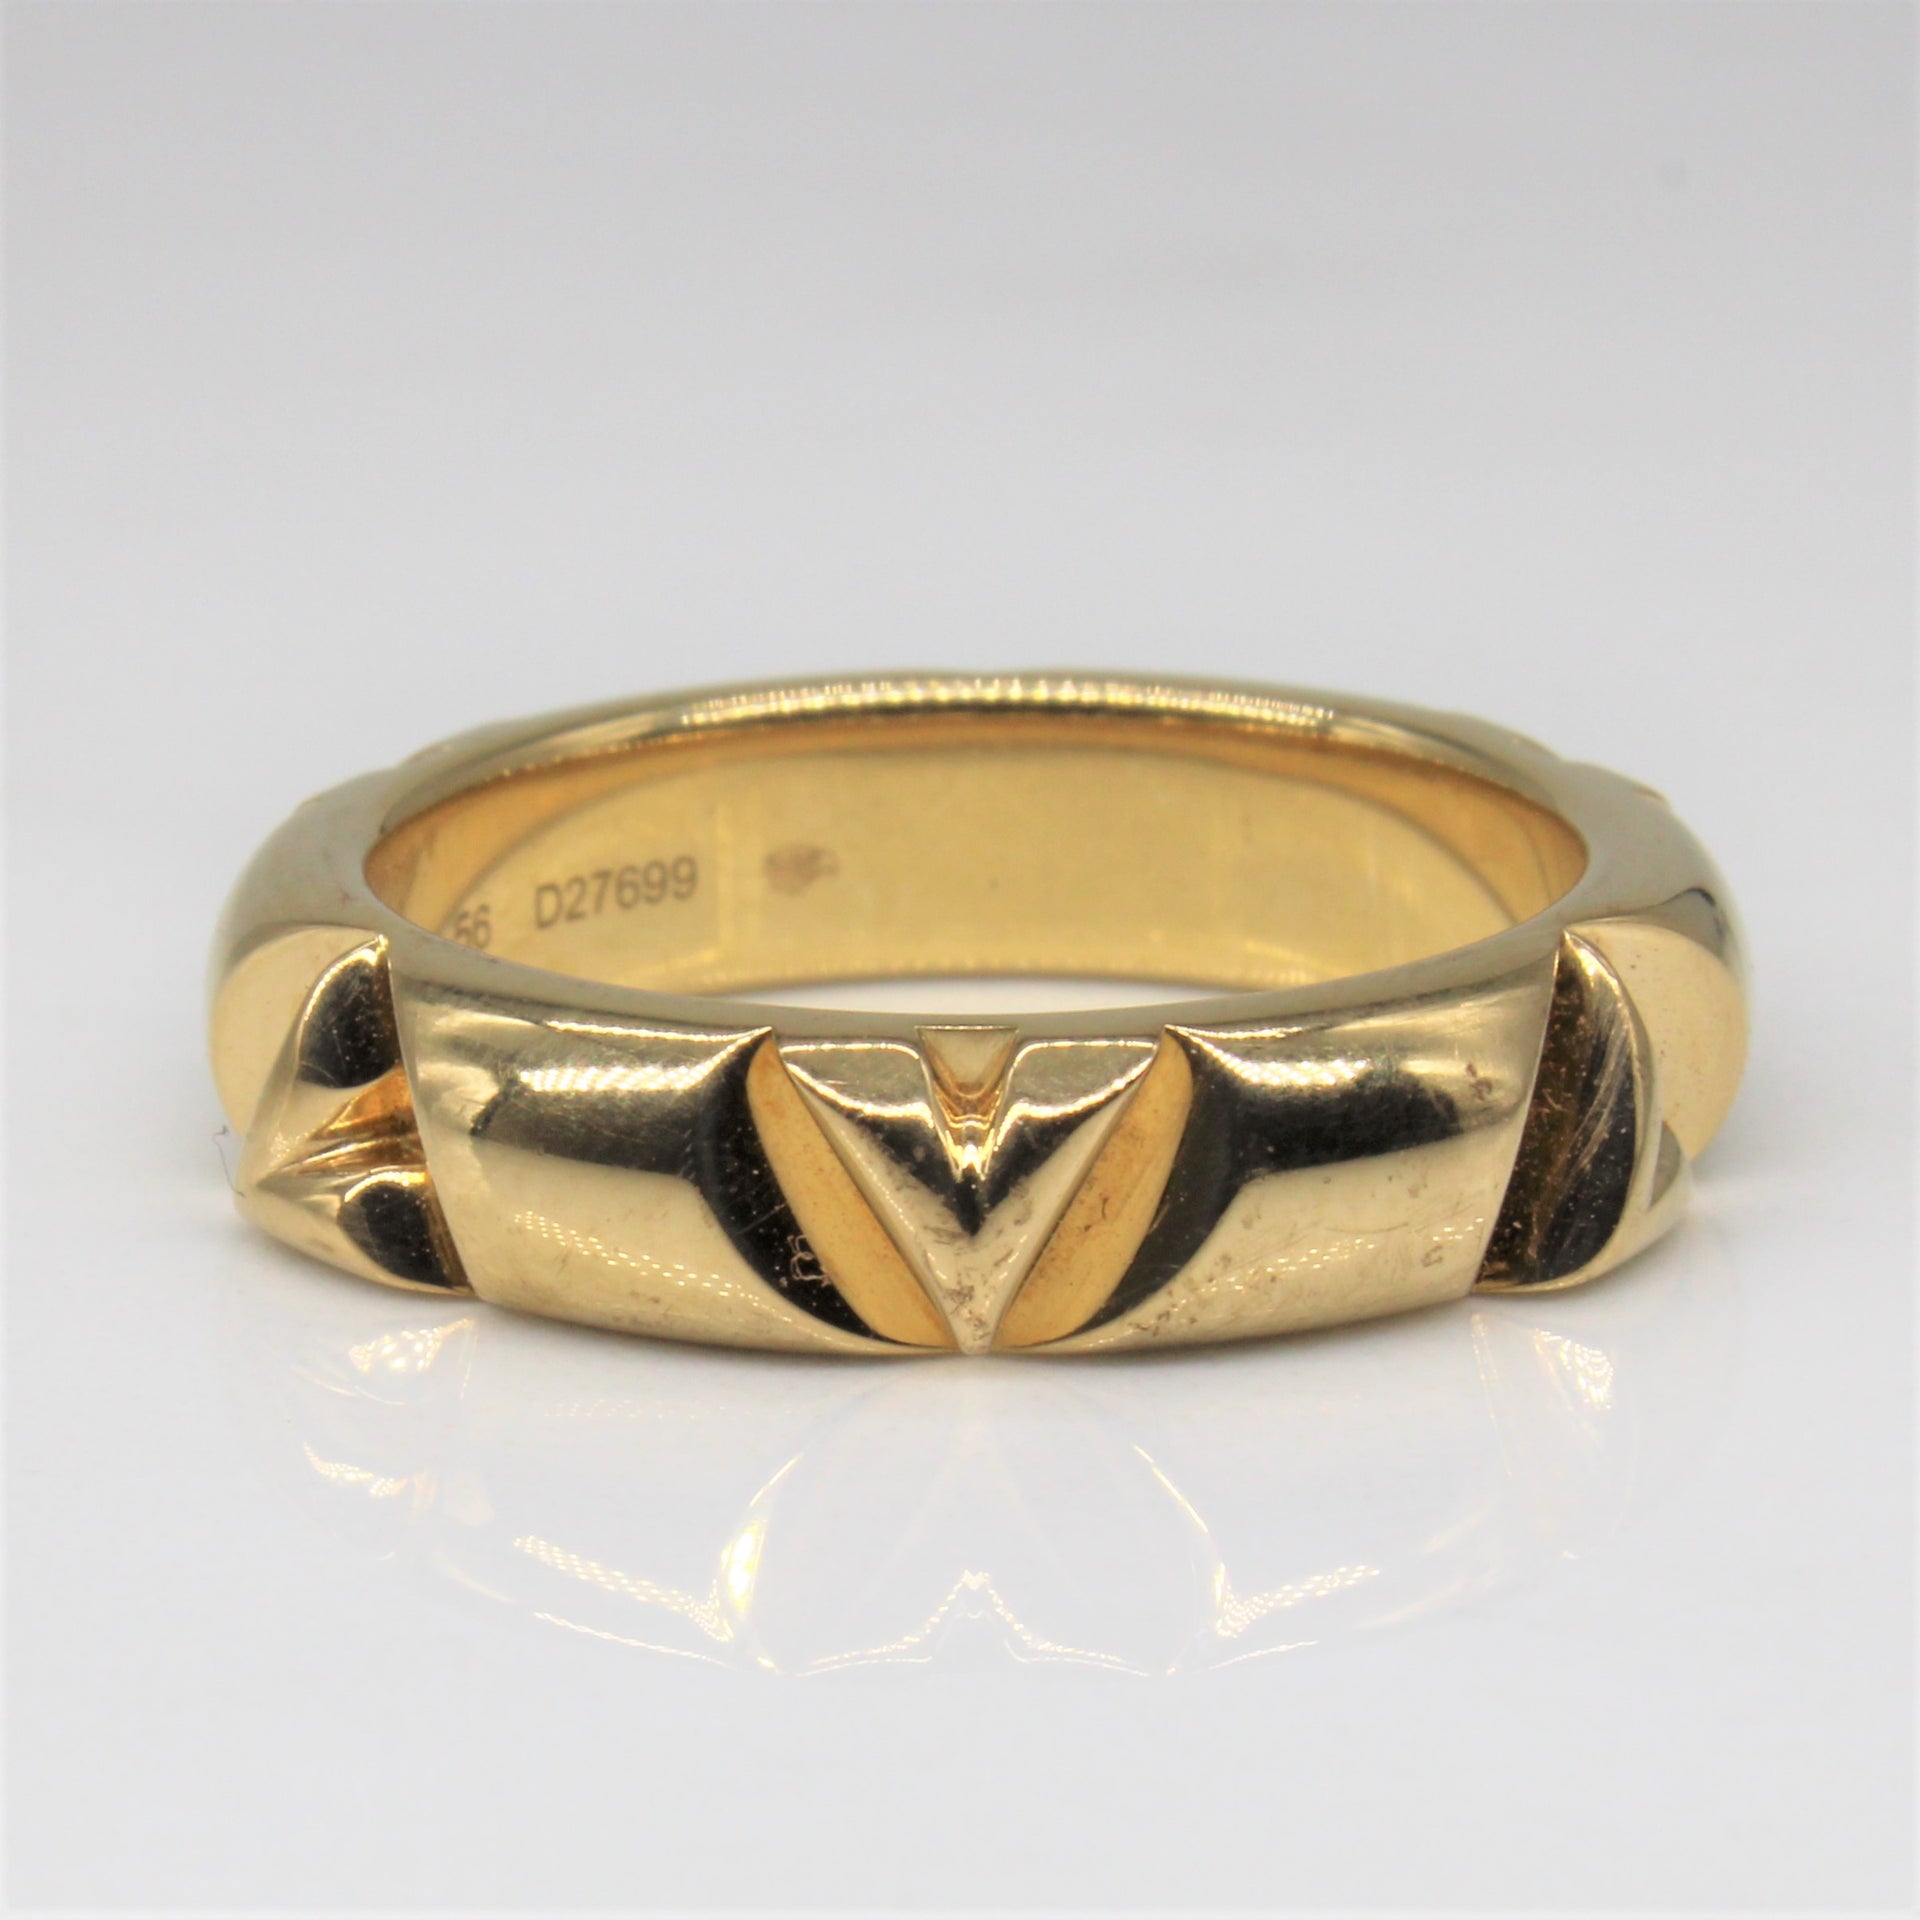 Louis Vuitton LV Volt Multi Ring 18K Gold. Size 55